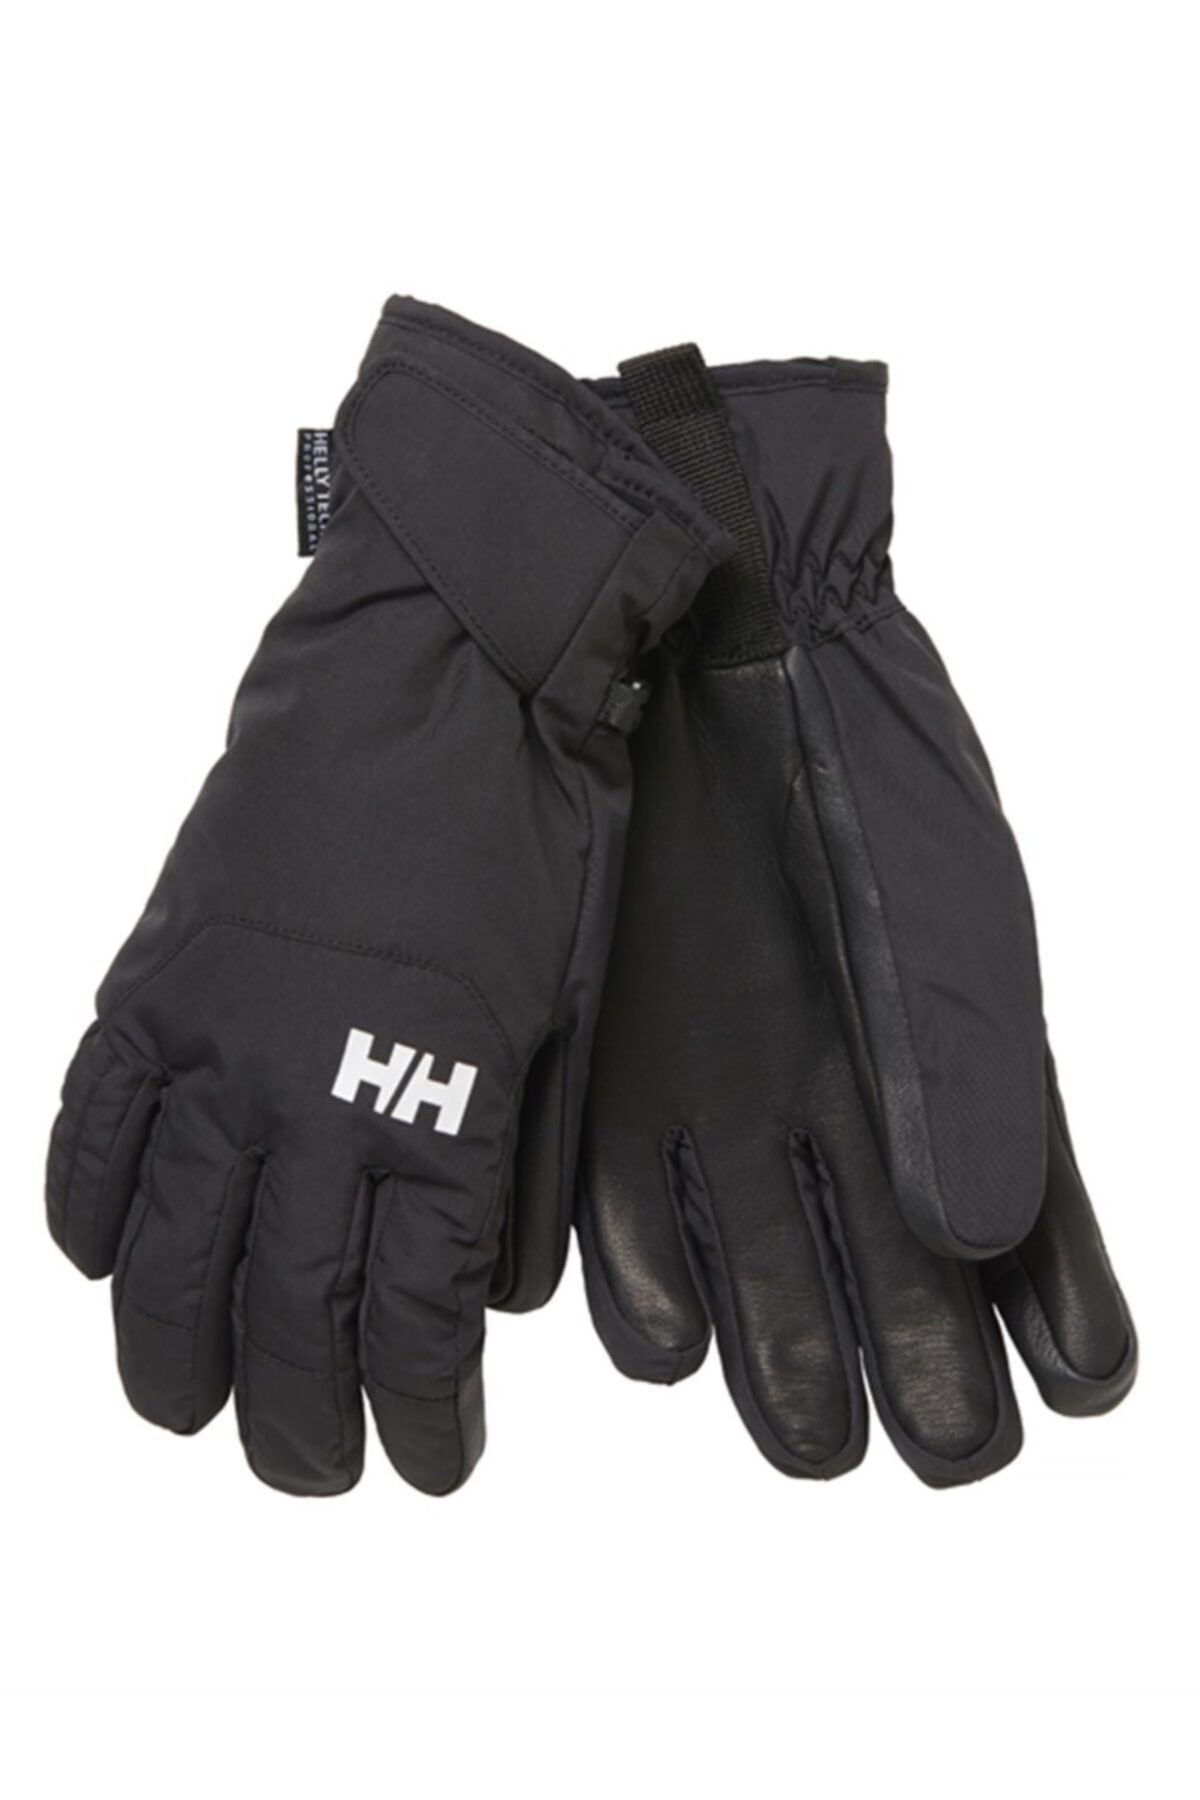 Helly Hansen Hh Swıft Ht Glove